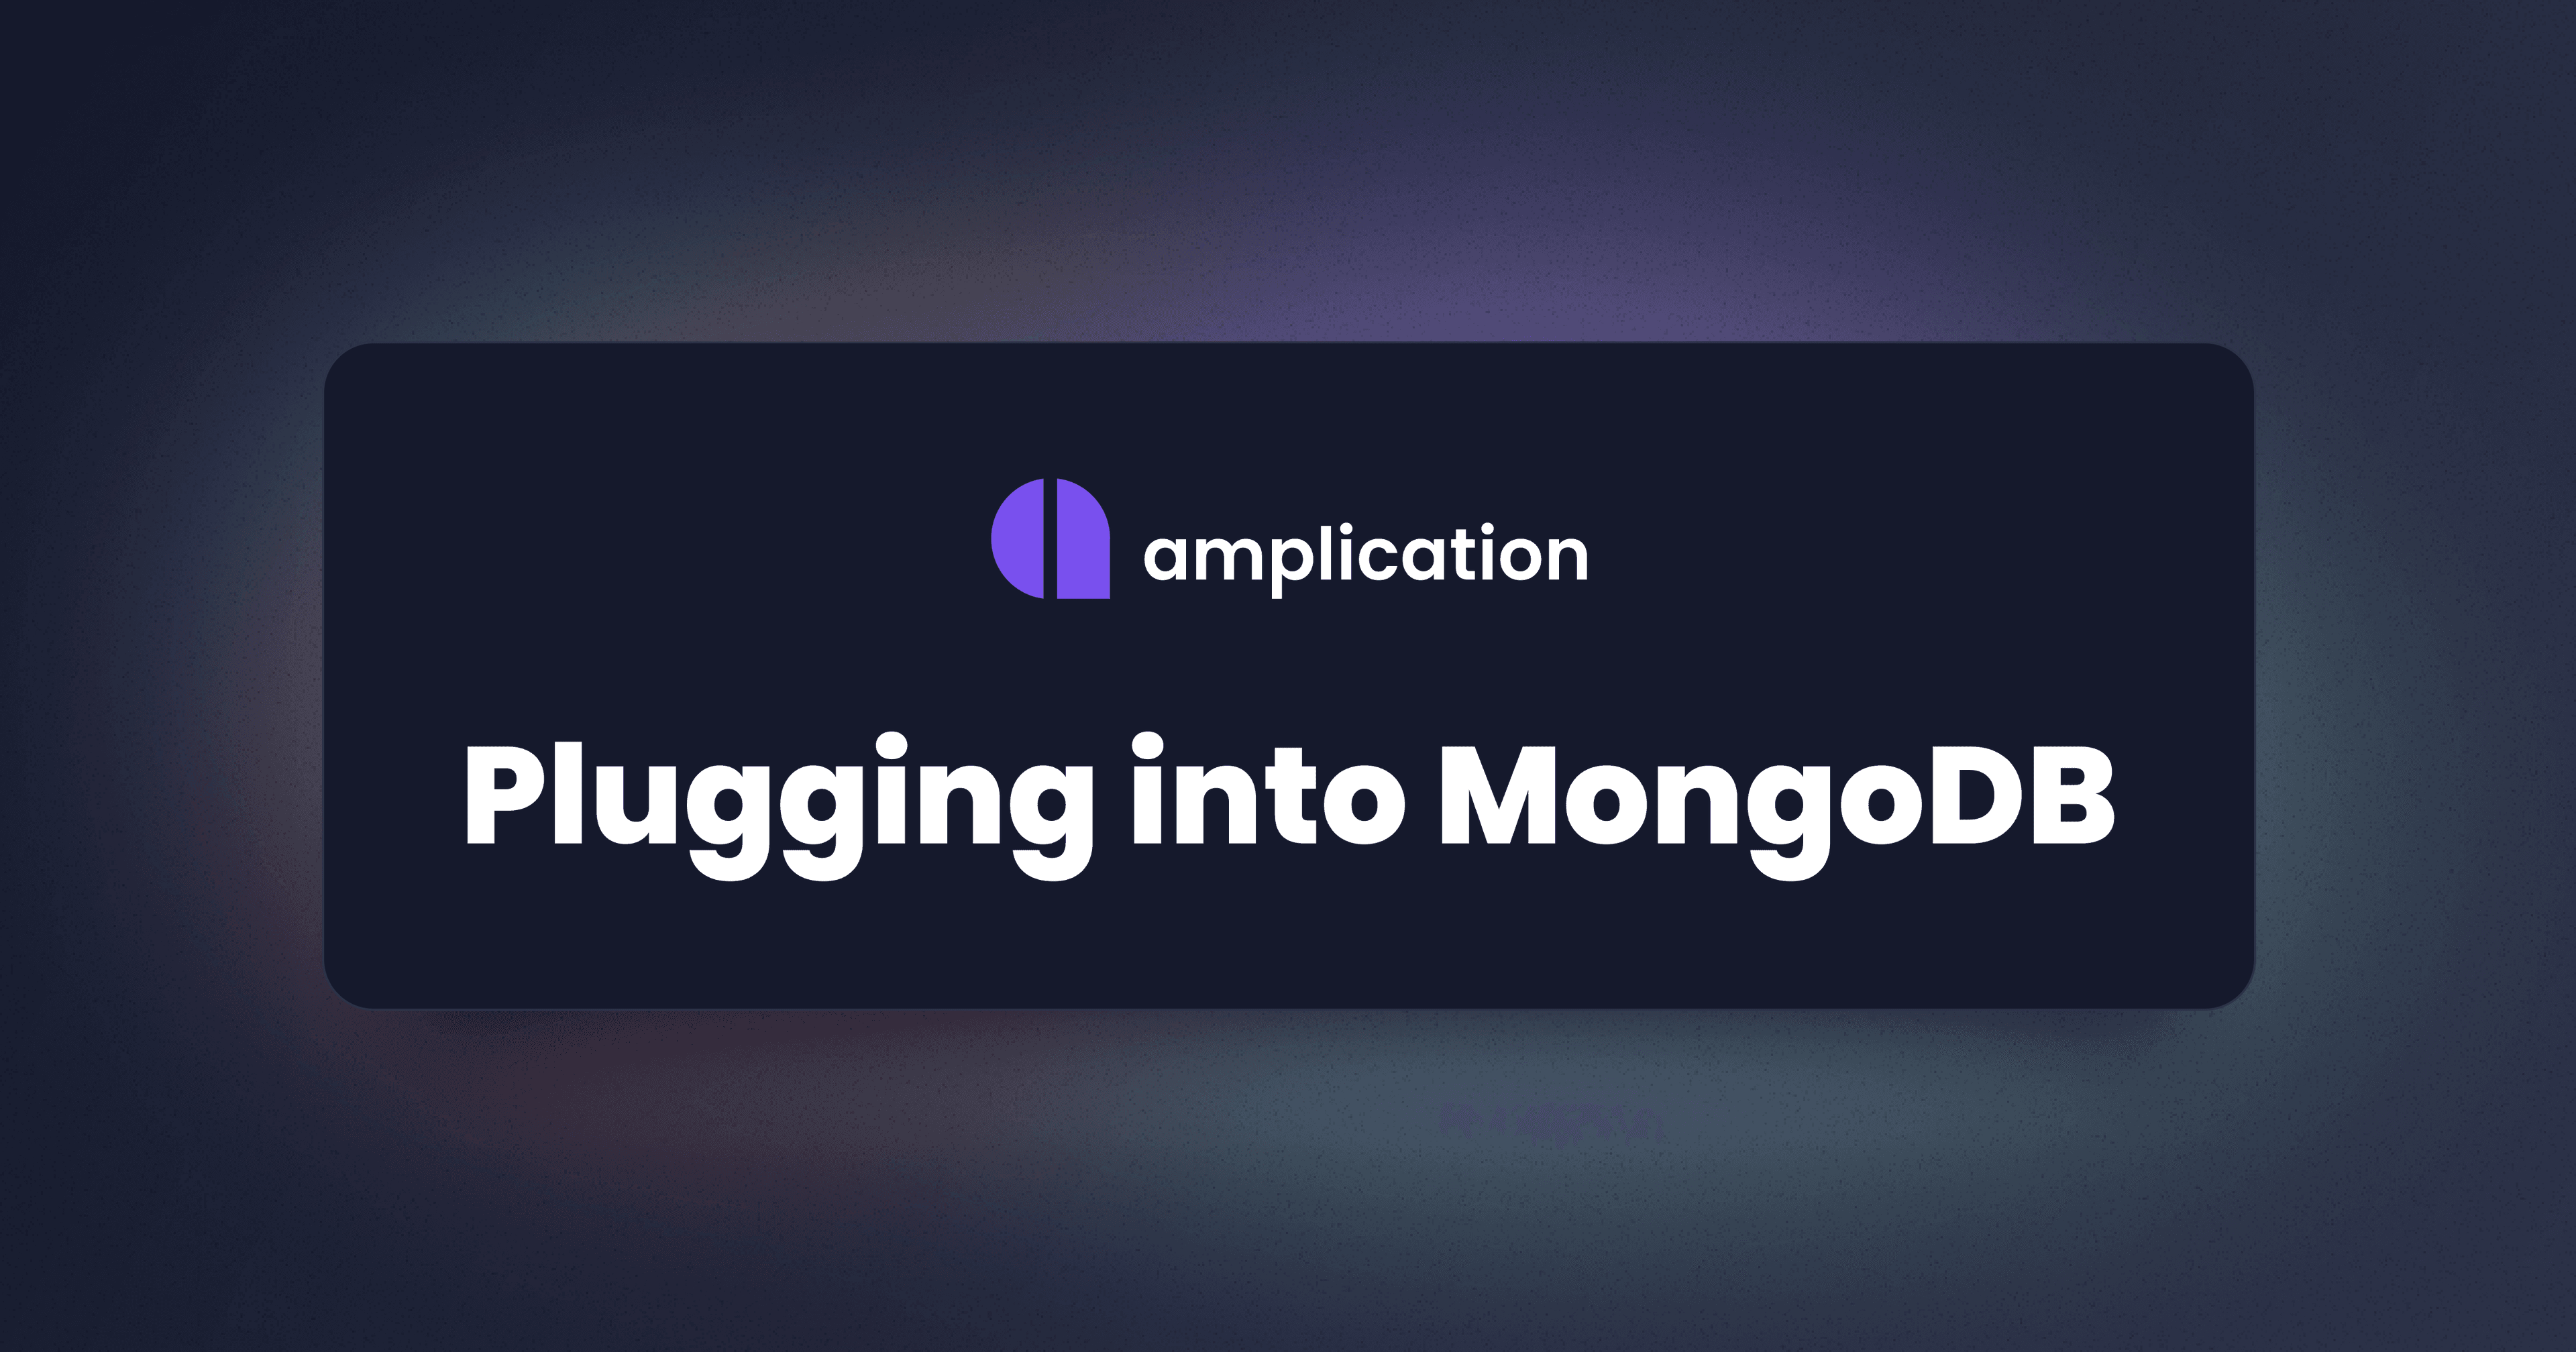 Plugging into MongoDB